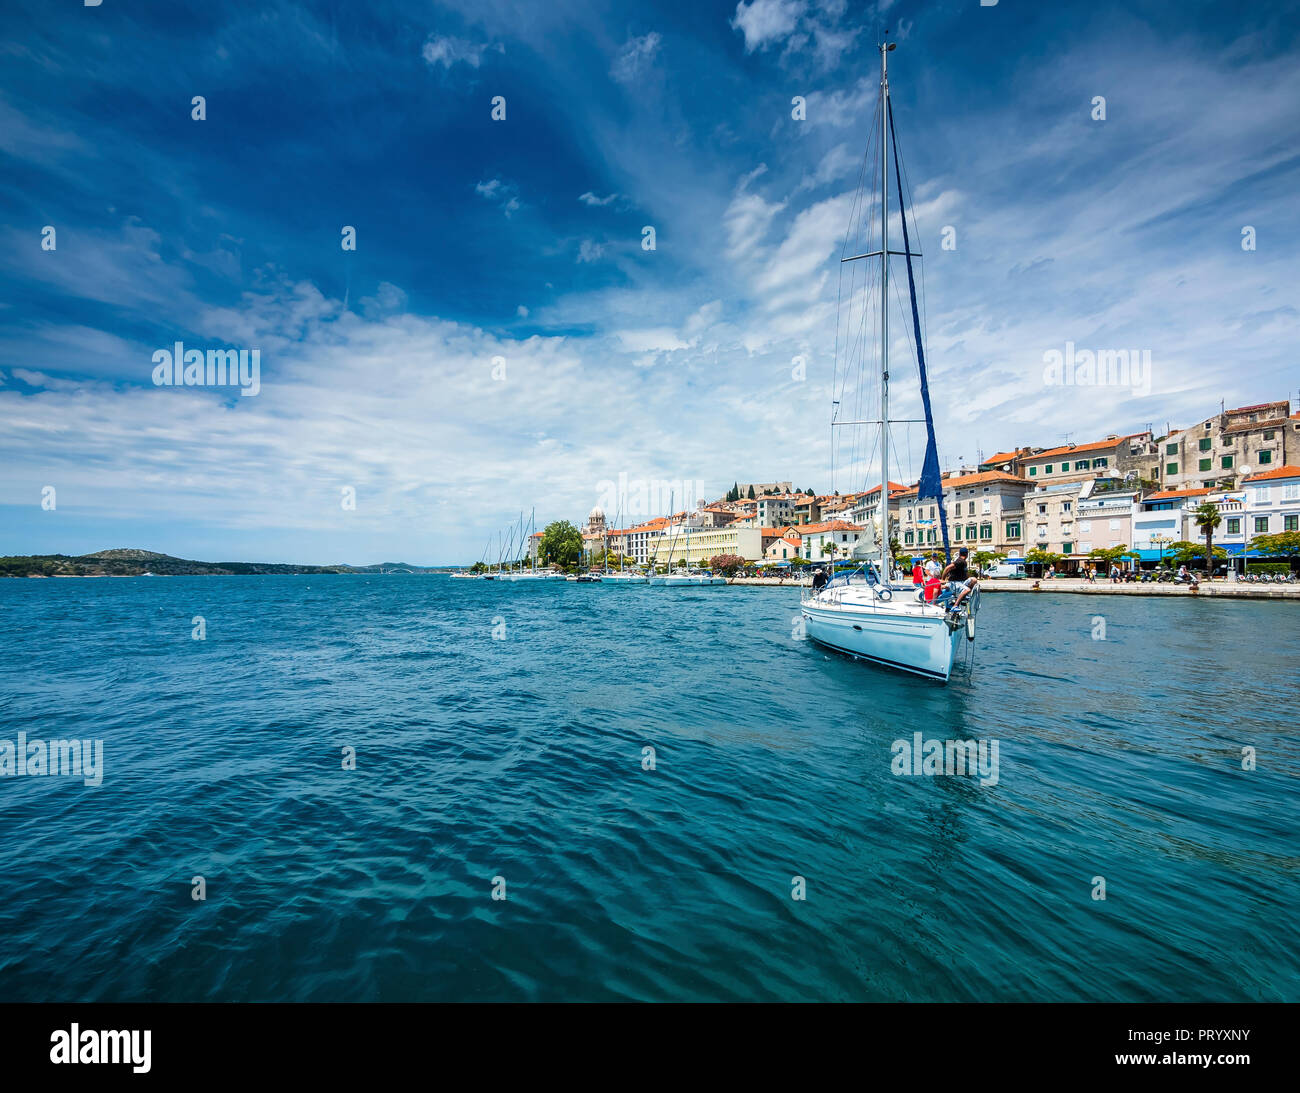 Kroatien, Adriaküste, Dalmatien, Region Split, Sibenik mit Uferpromenade und Segelyachten Stock Photo